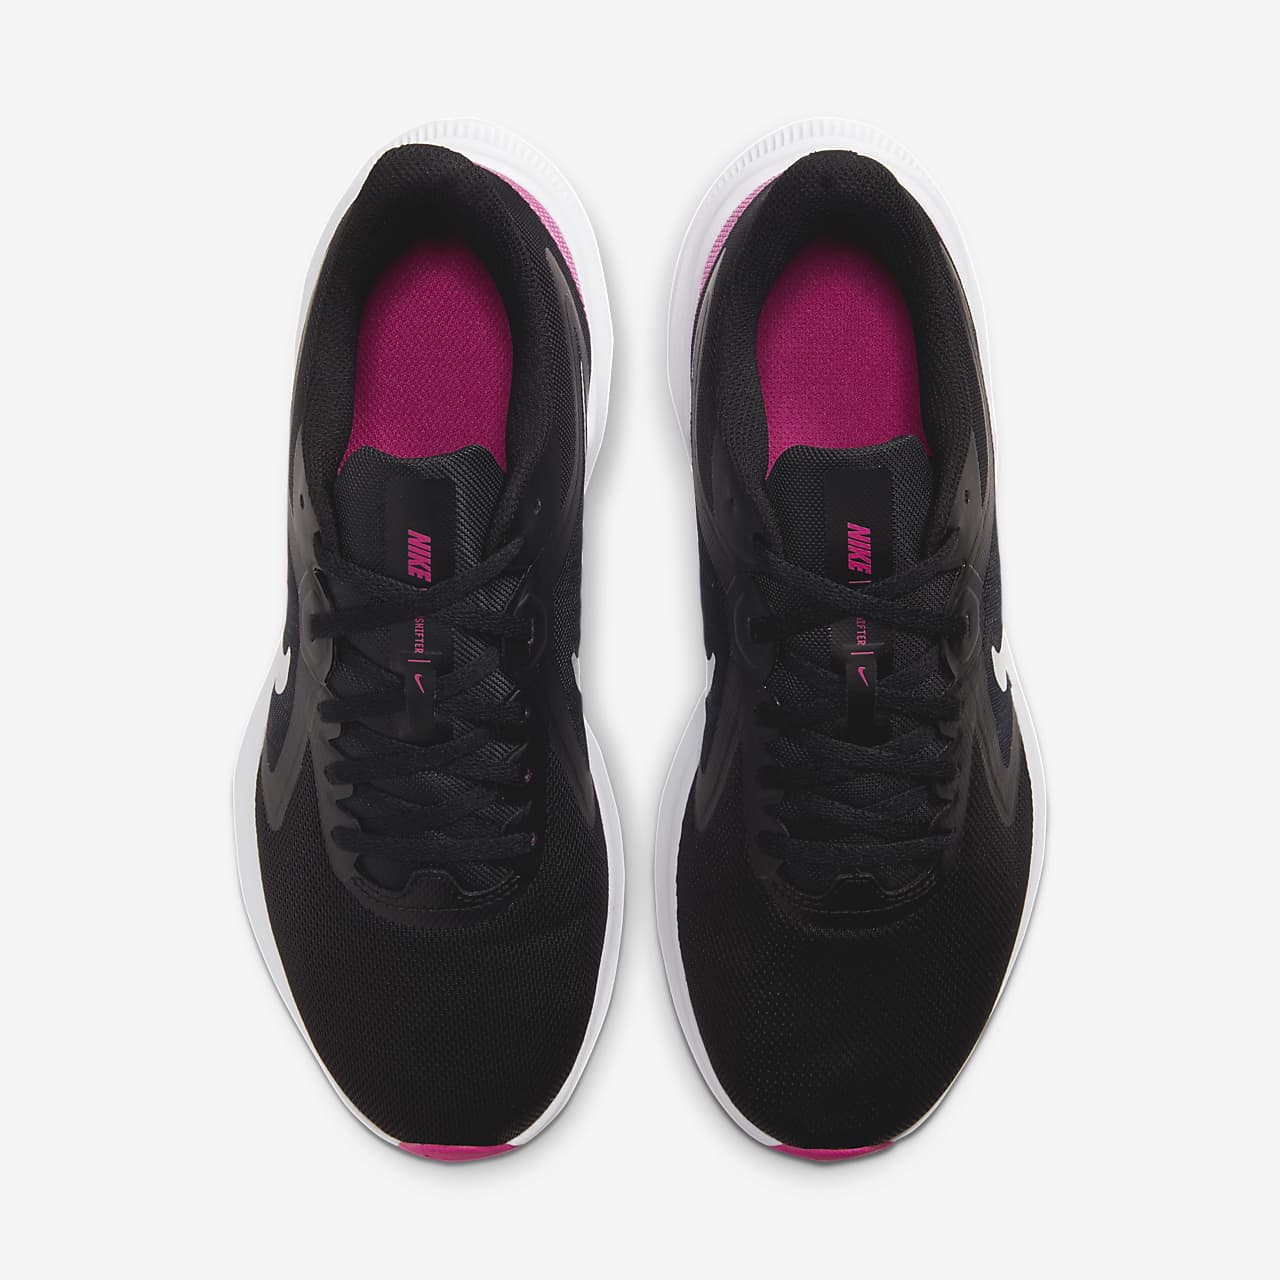 Nike Downshifter Women's Road Running Shoes.